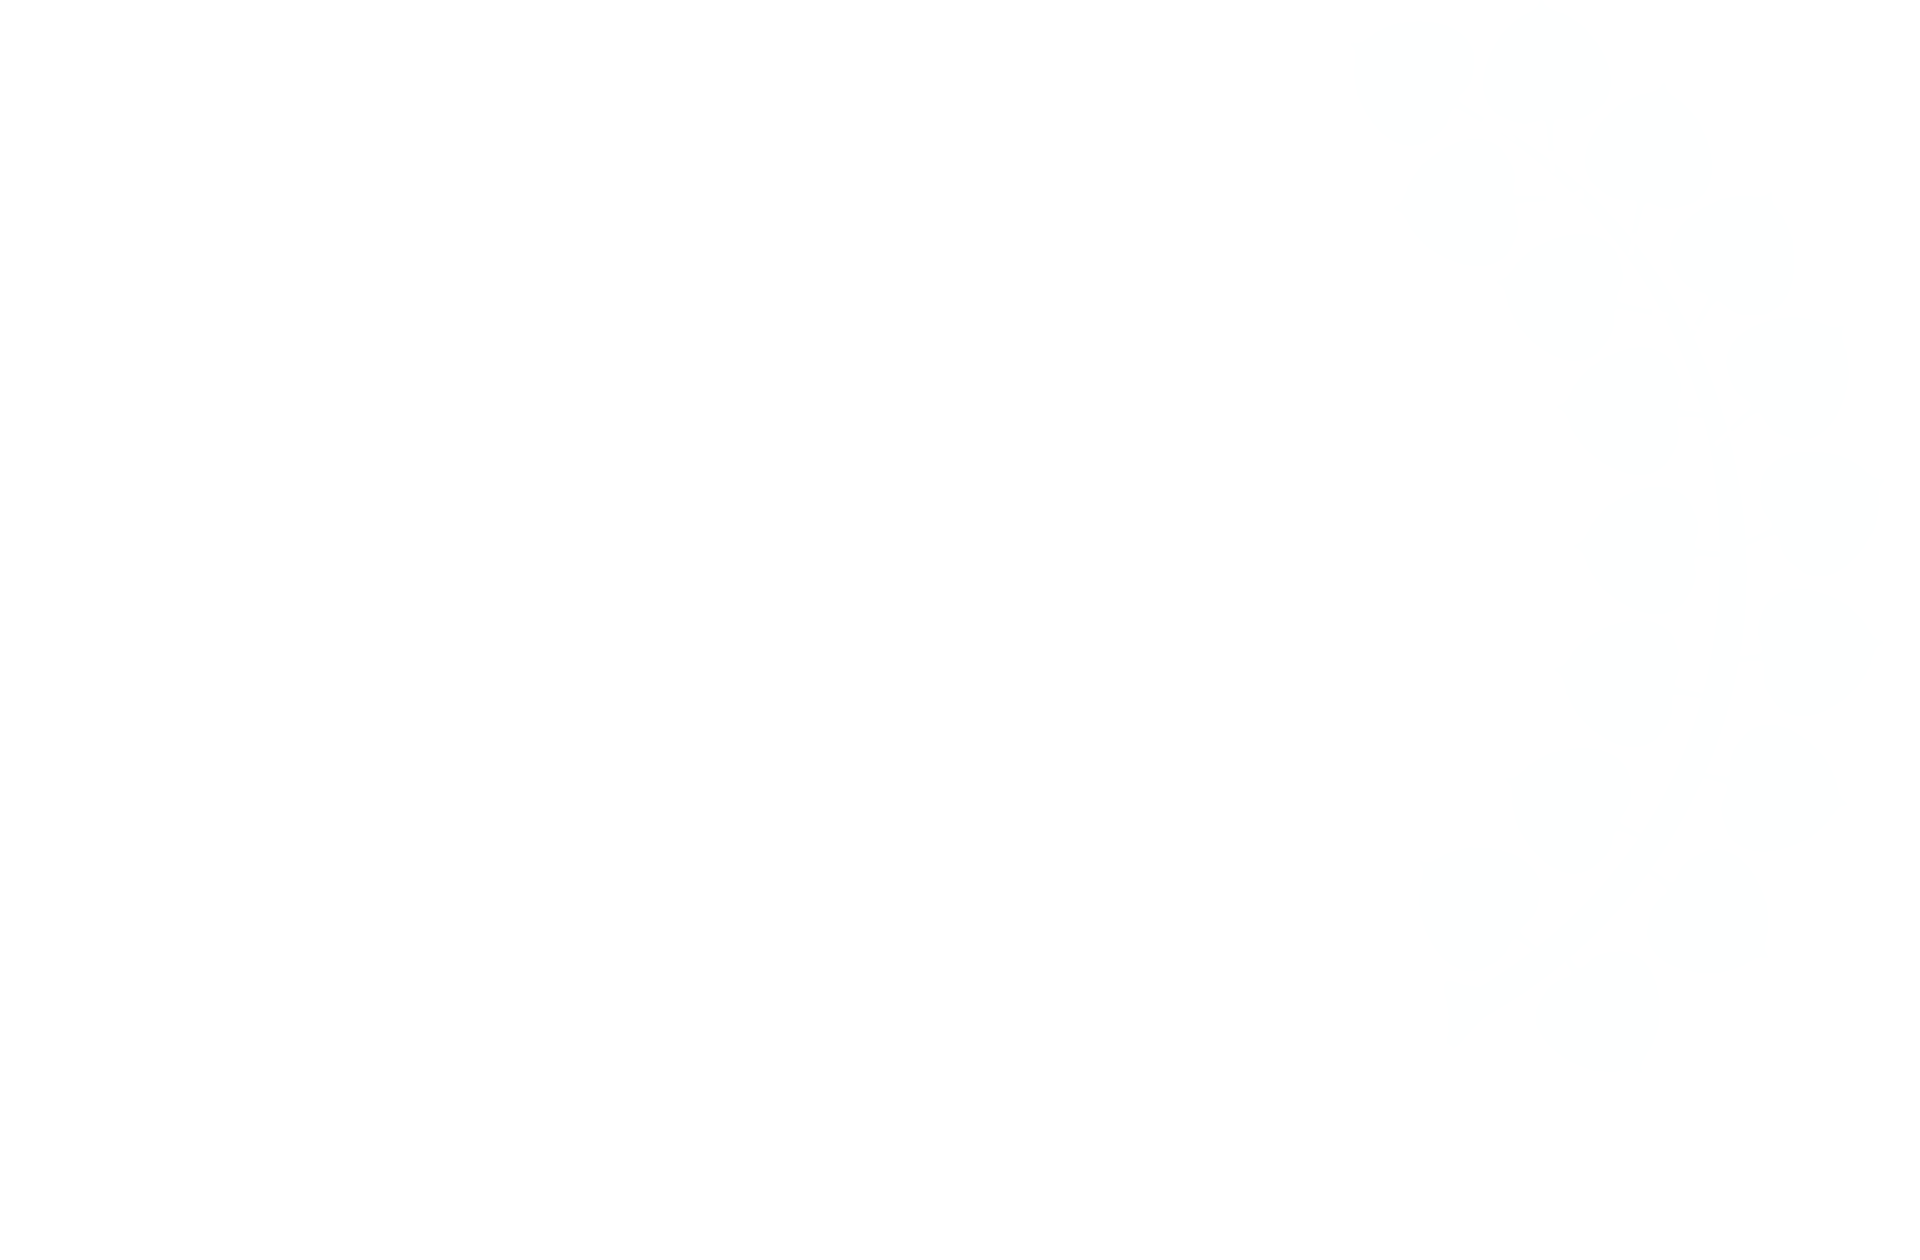 Official Selection Aspen International Film Festival